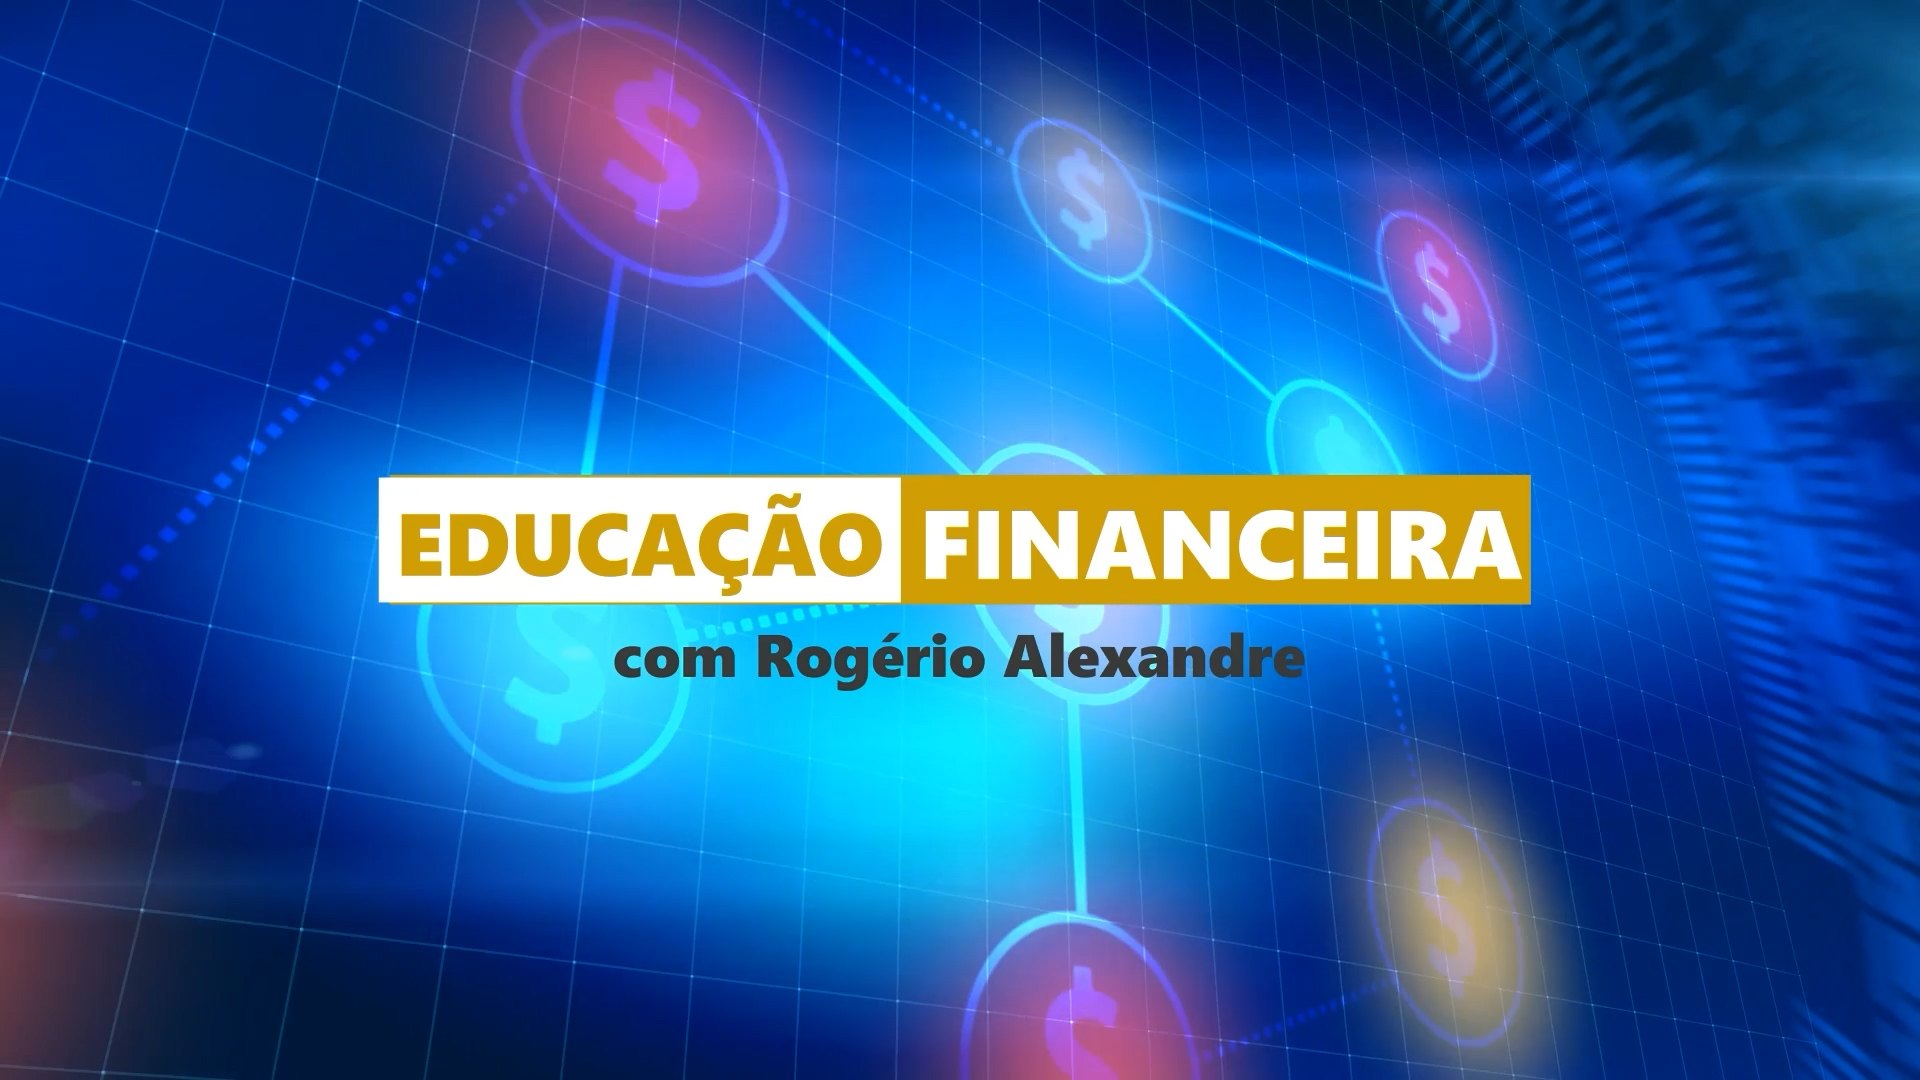 EDUCACAO FINANCEIRA - COM OU SEM DINHEIRO, FINANCIAR É A SOLUÇÃO